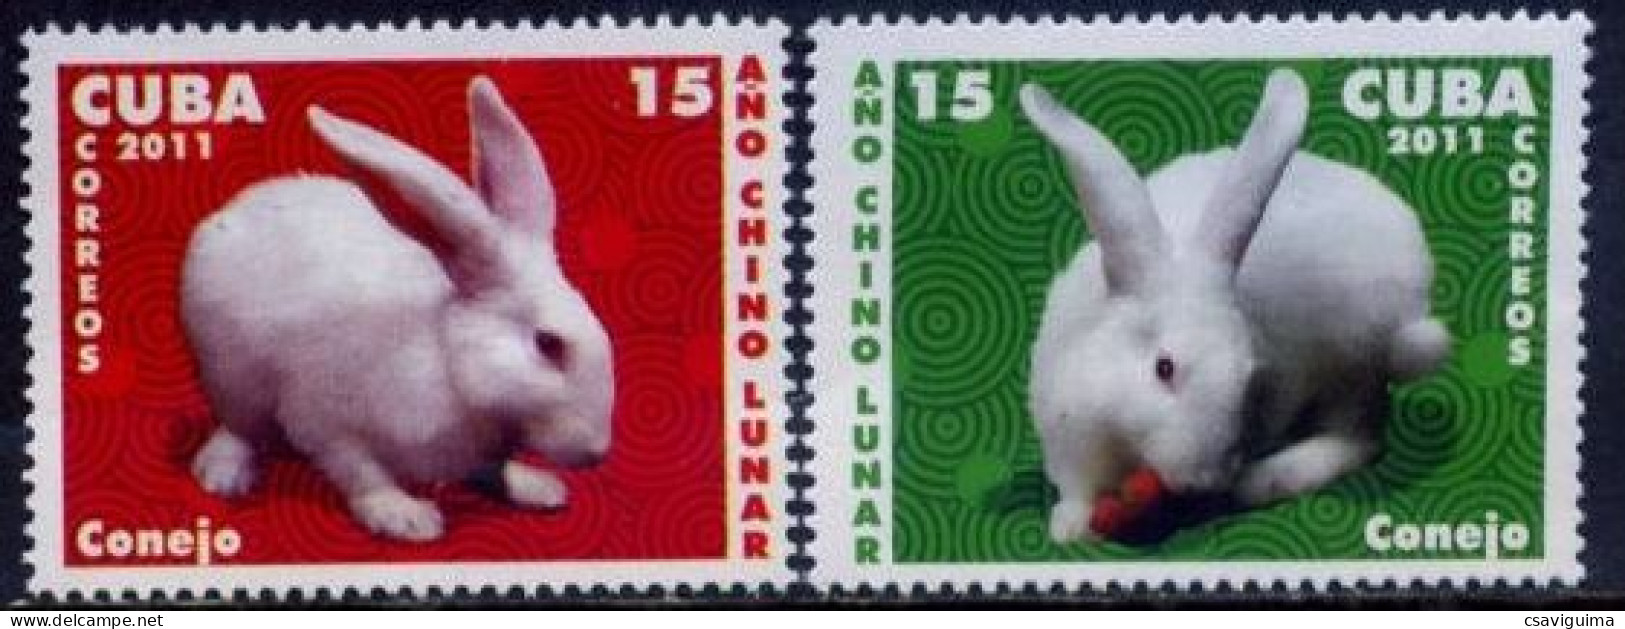 Cuba - 2011 - Rabbits - Yv 4947/48 - Conejos